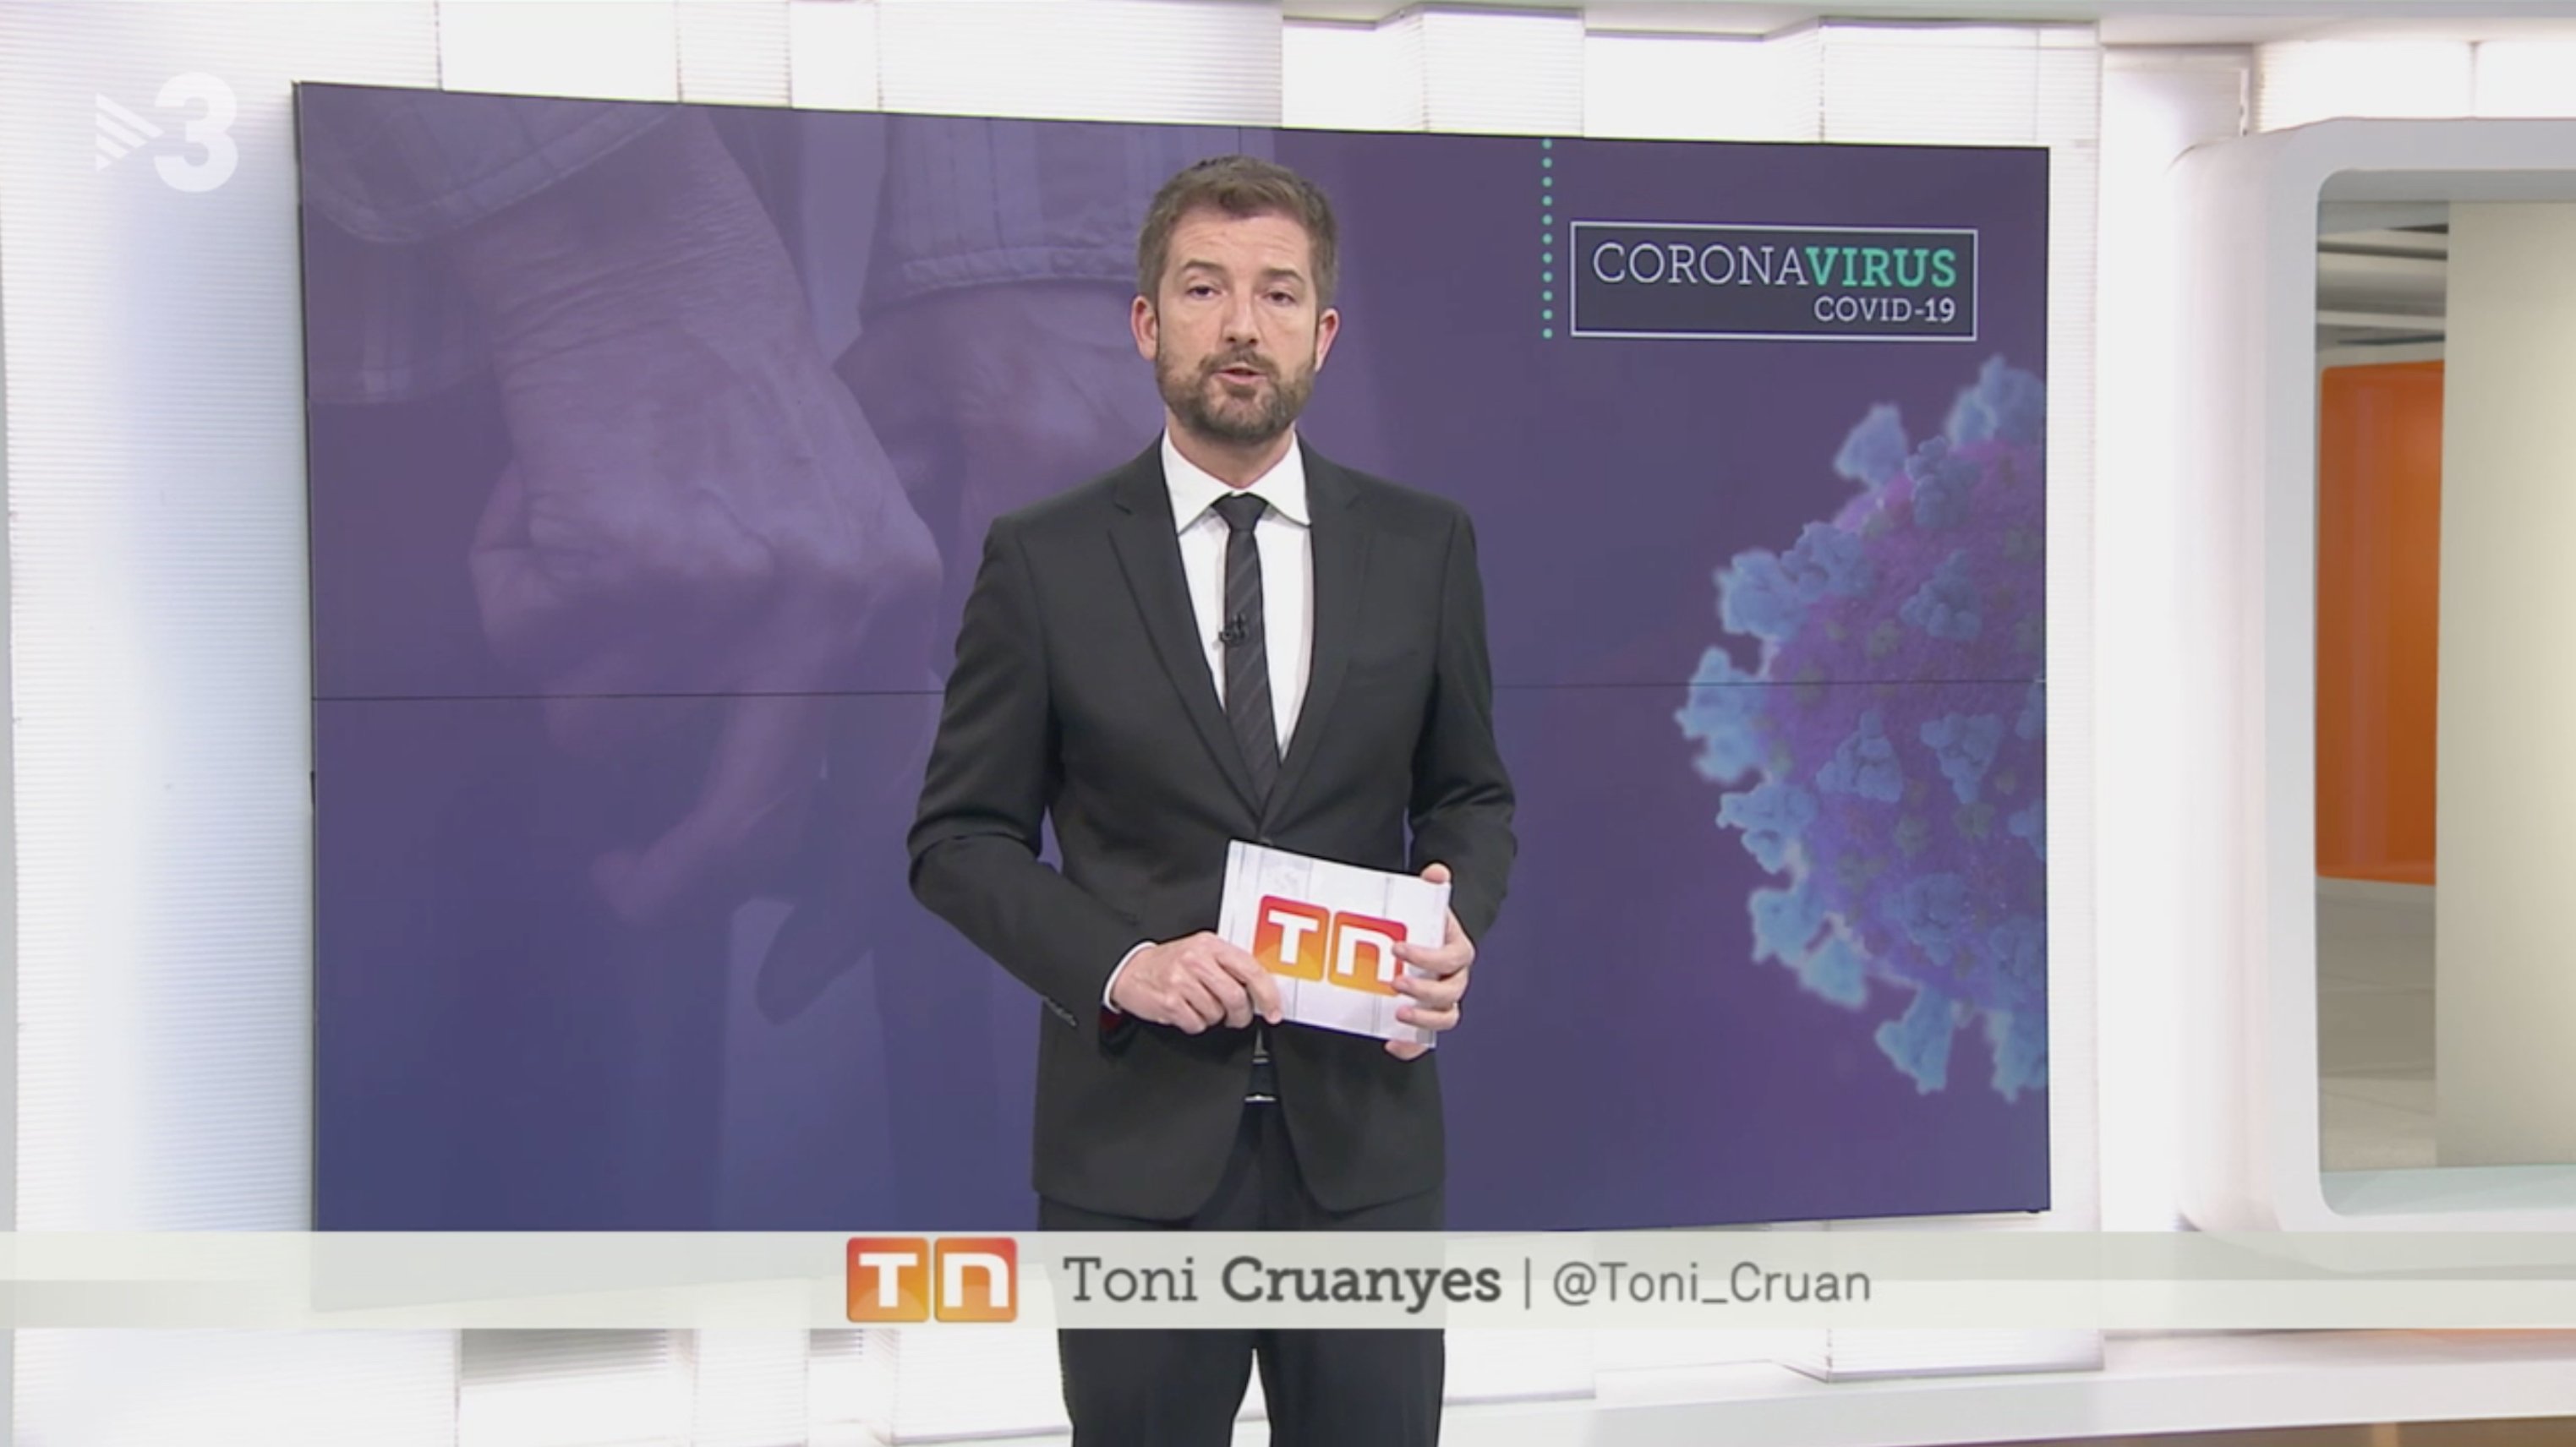 La impactant imatge de Toni Cruanyes: així es treballa a TV3 pel coronavirus